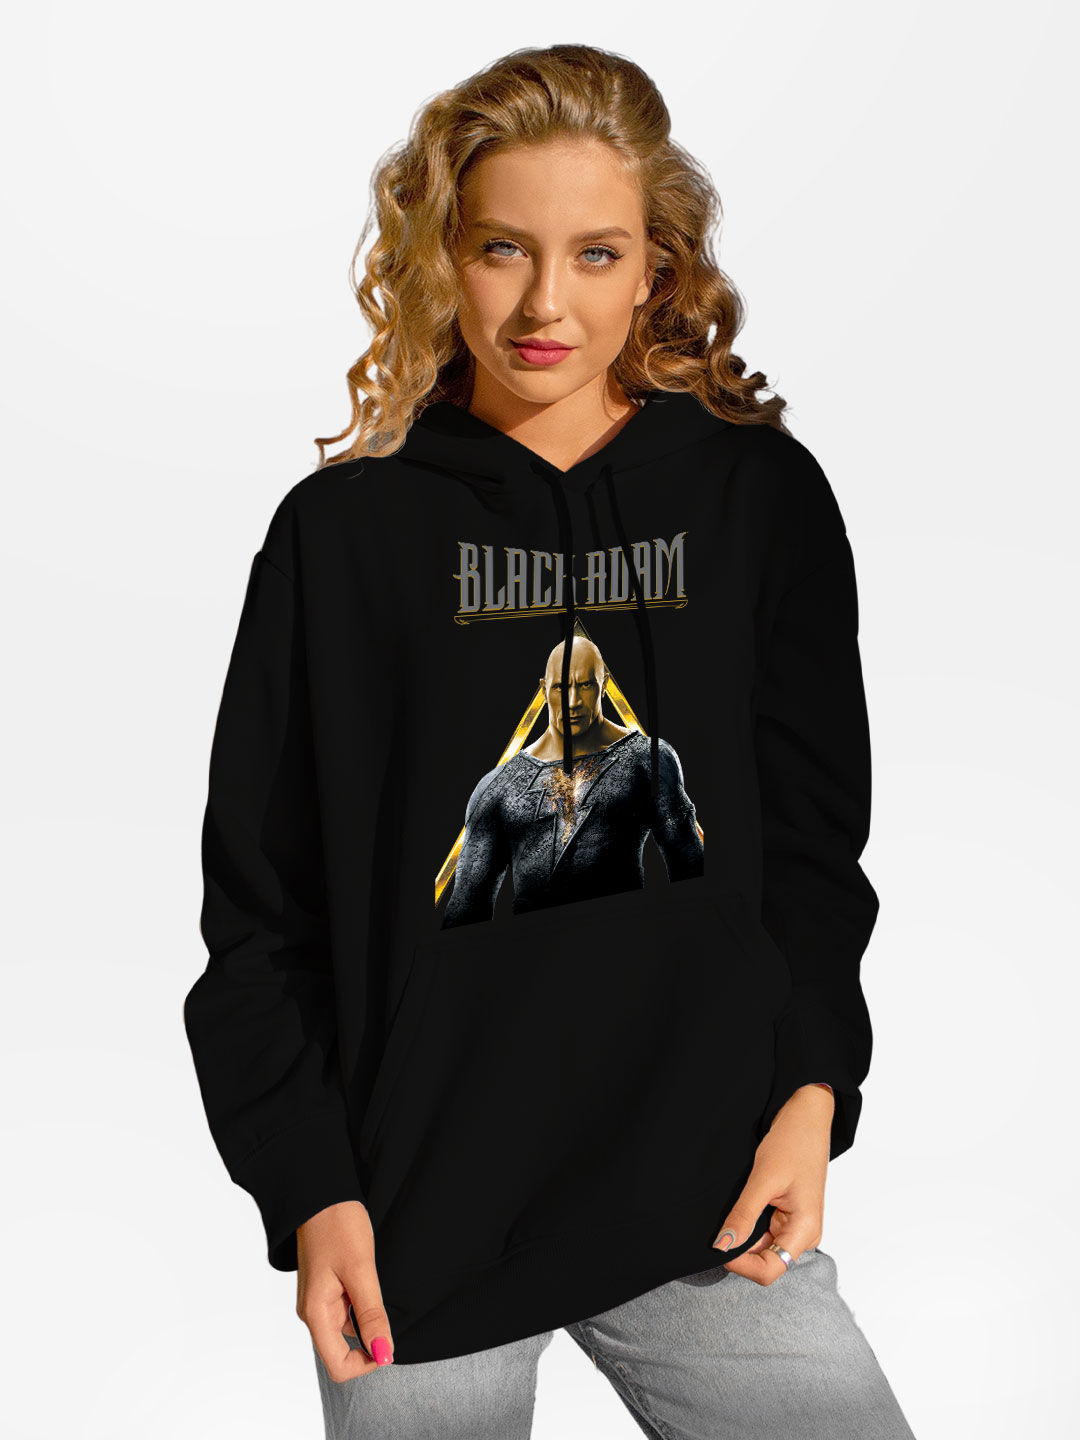 Buy Adam Triangle Black - Female Hoodie Hoodies Online